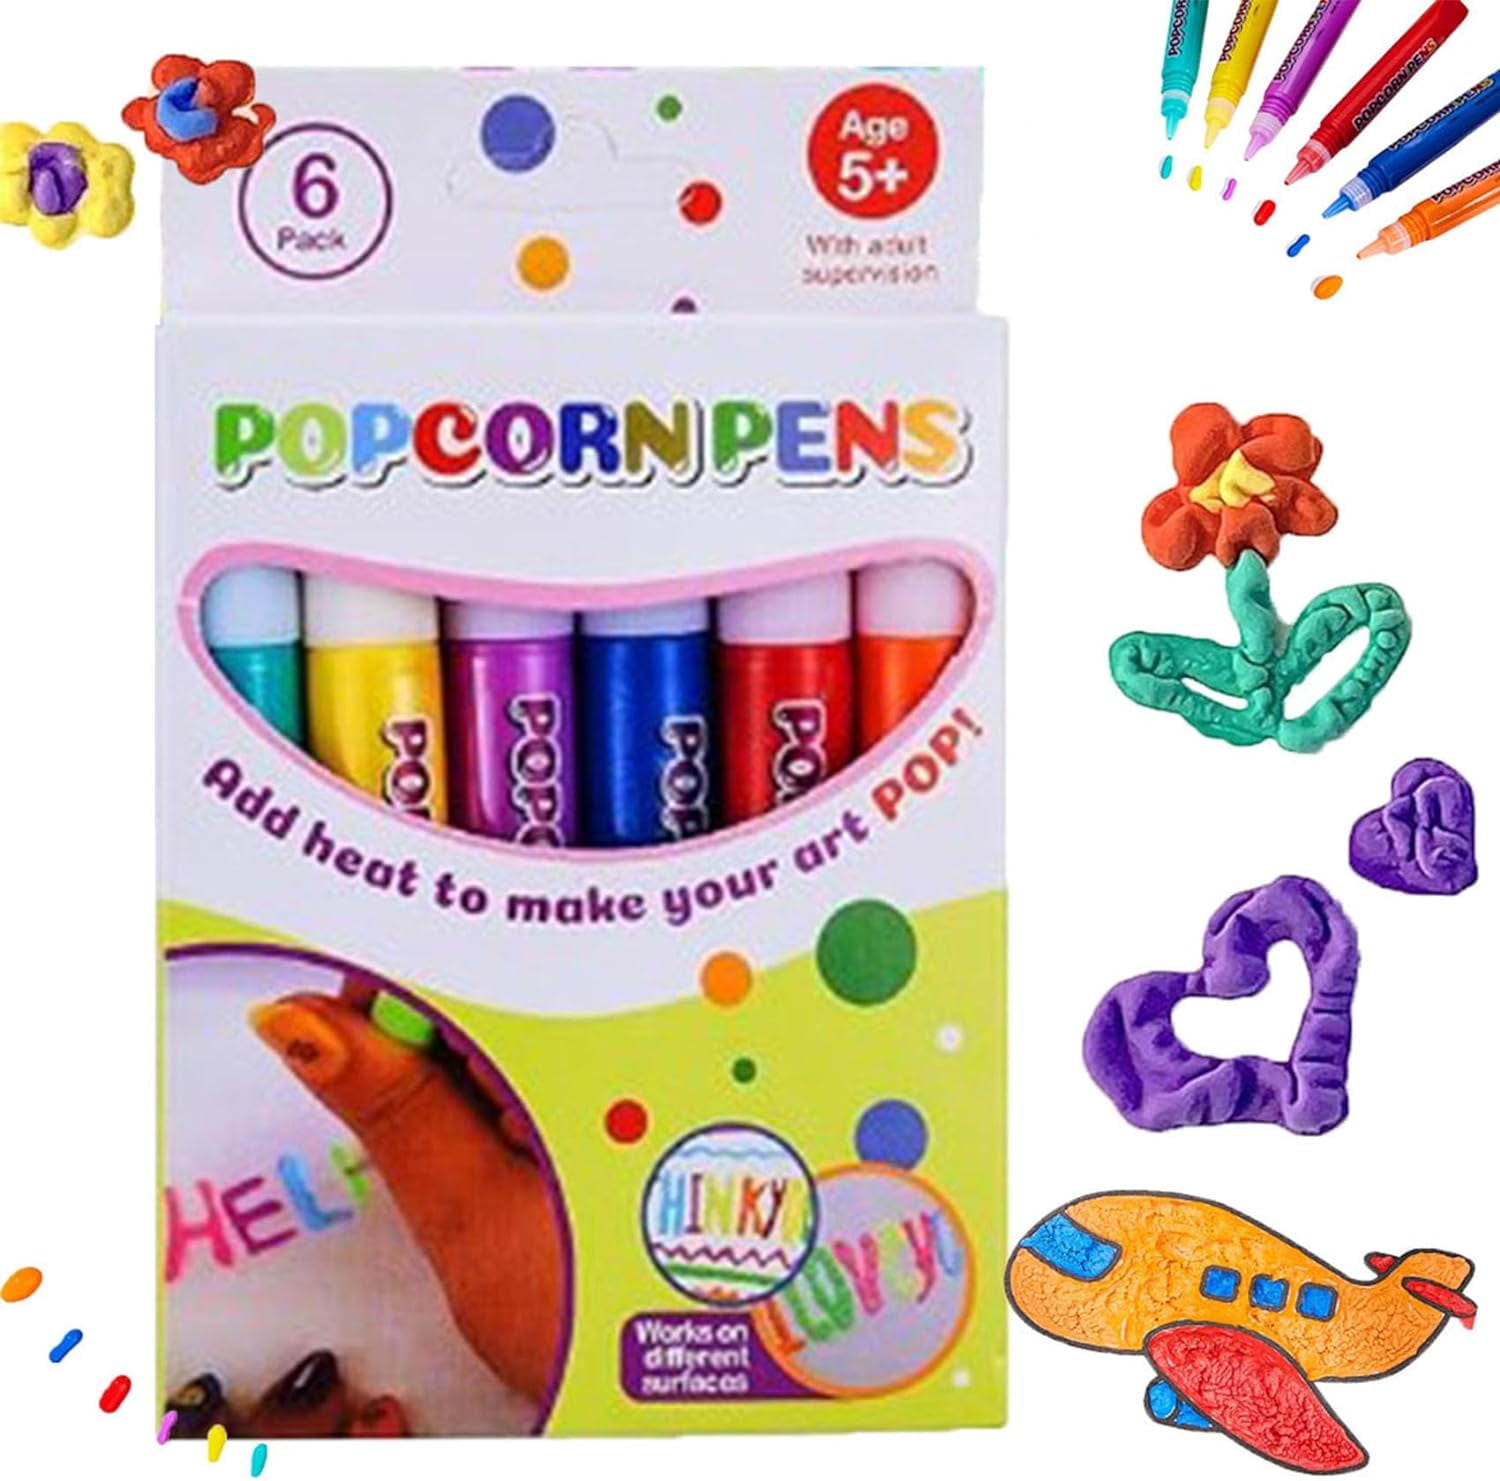 LJJFBSDG Bubble Pen,Magic Popcorn Pen,Print Bubble Pen Puffy 3D Art Safe  Pen,Magic Colour DIY Bubble Popcorn Drawing Pens for Greeting Birthday  Cards